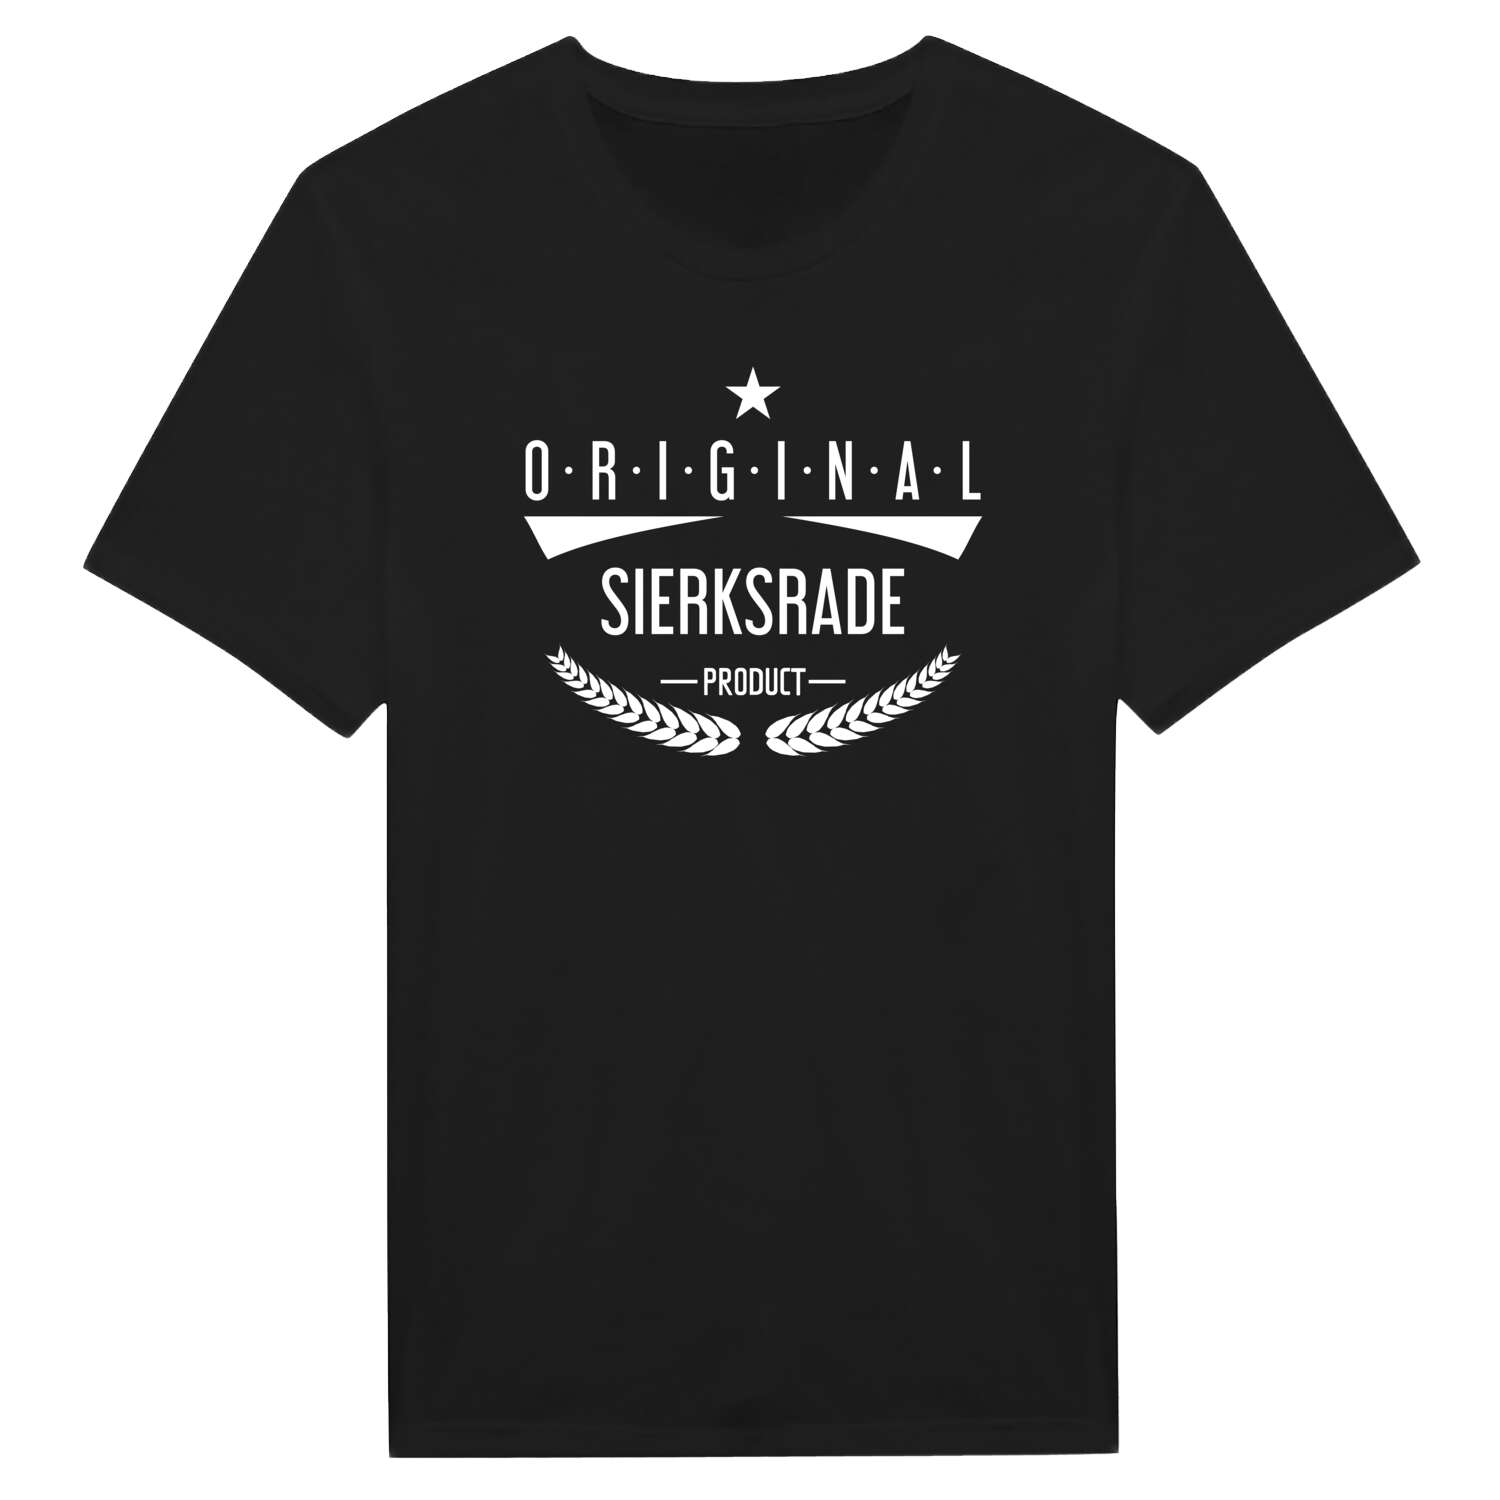 Sierksrade T-Shirt »Original Product«